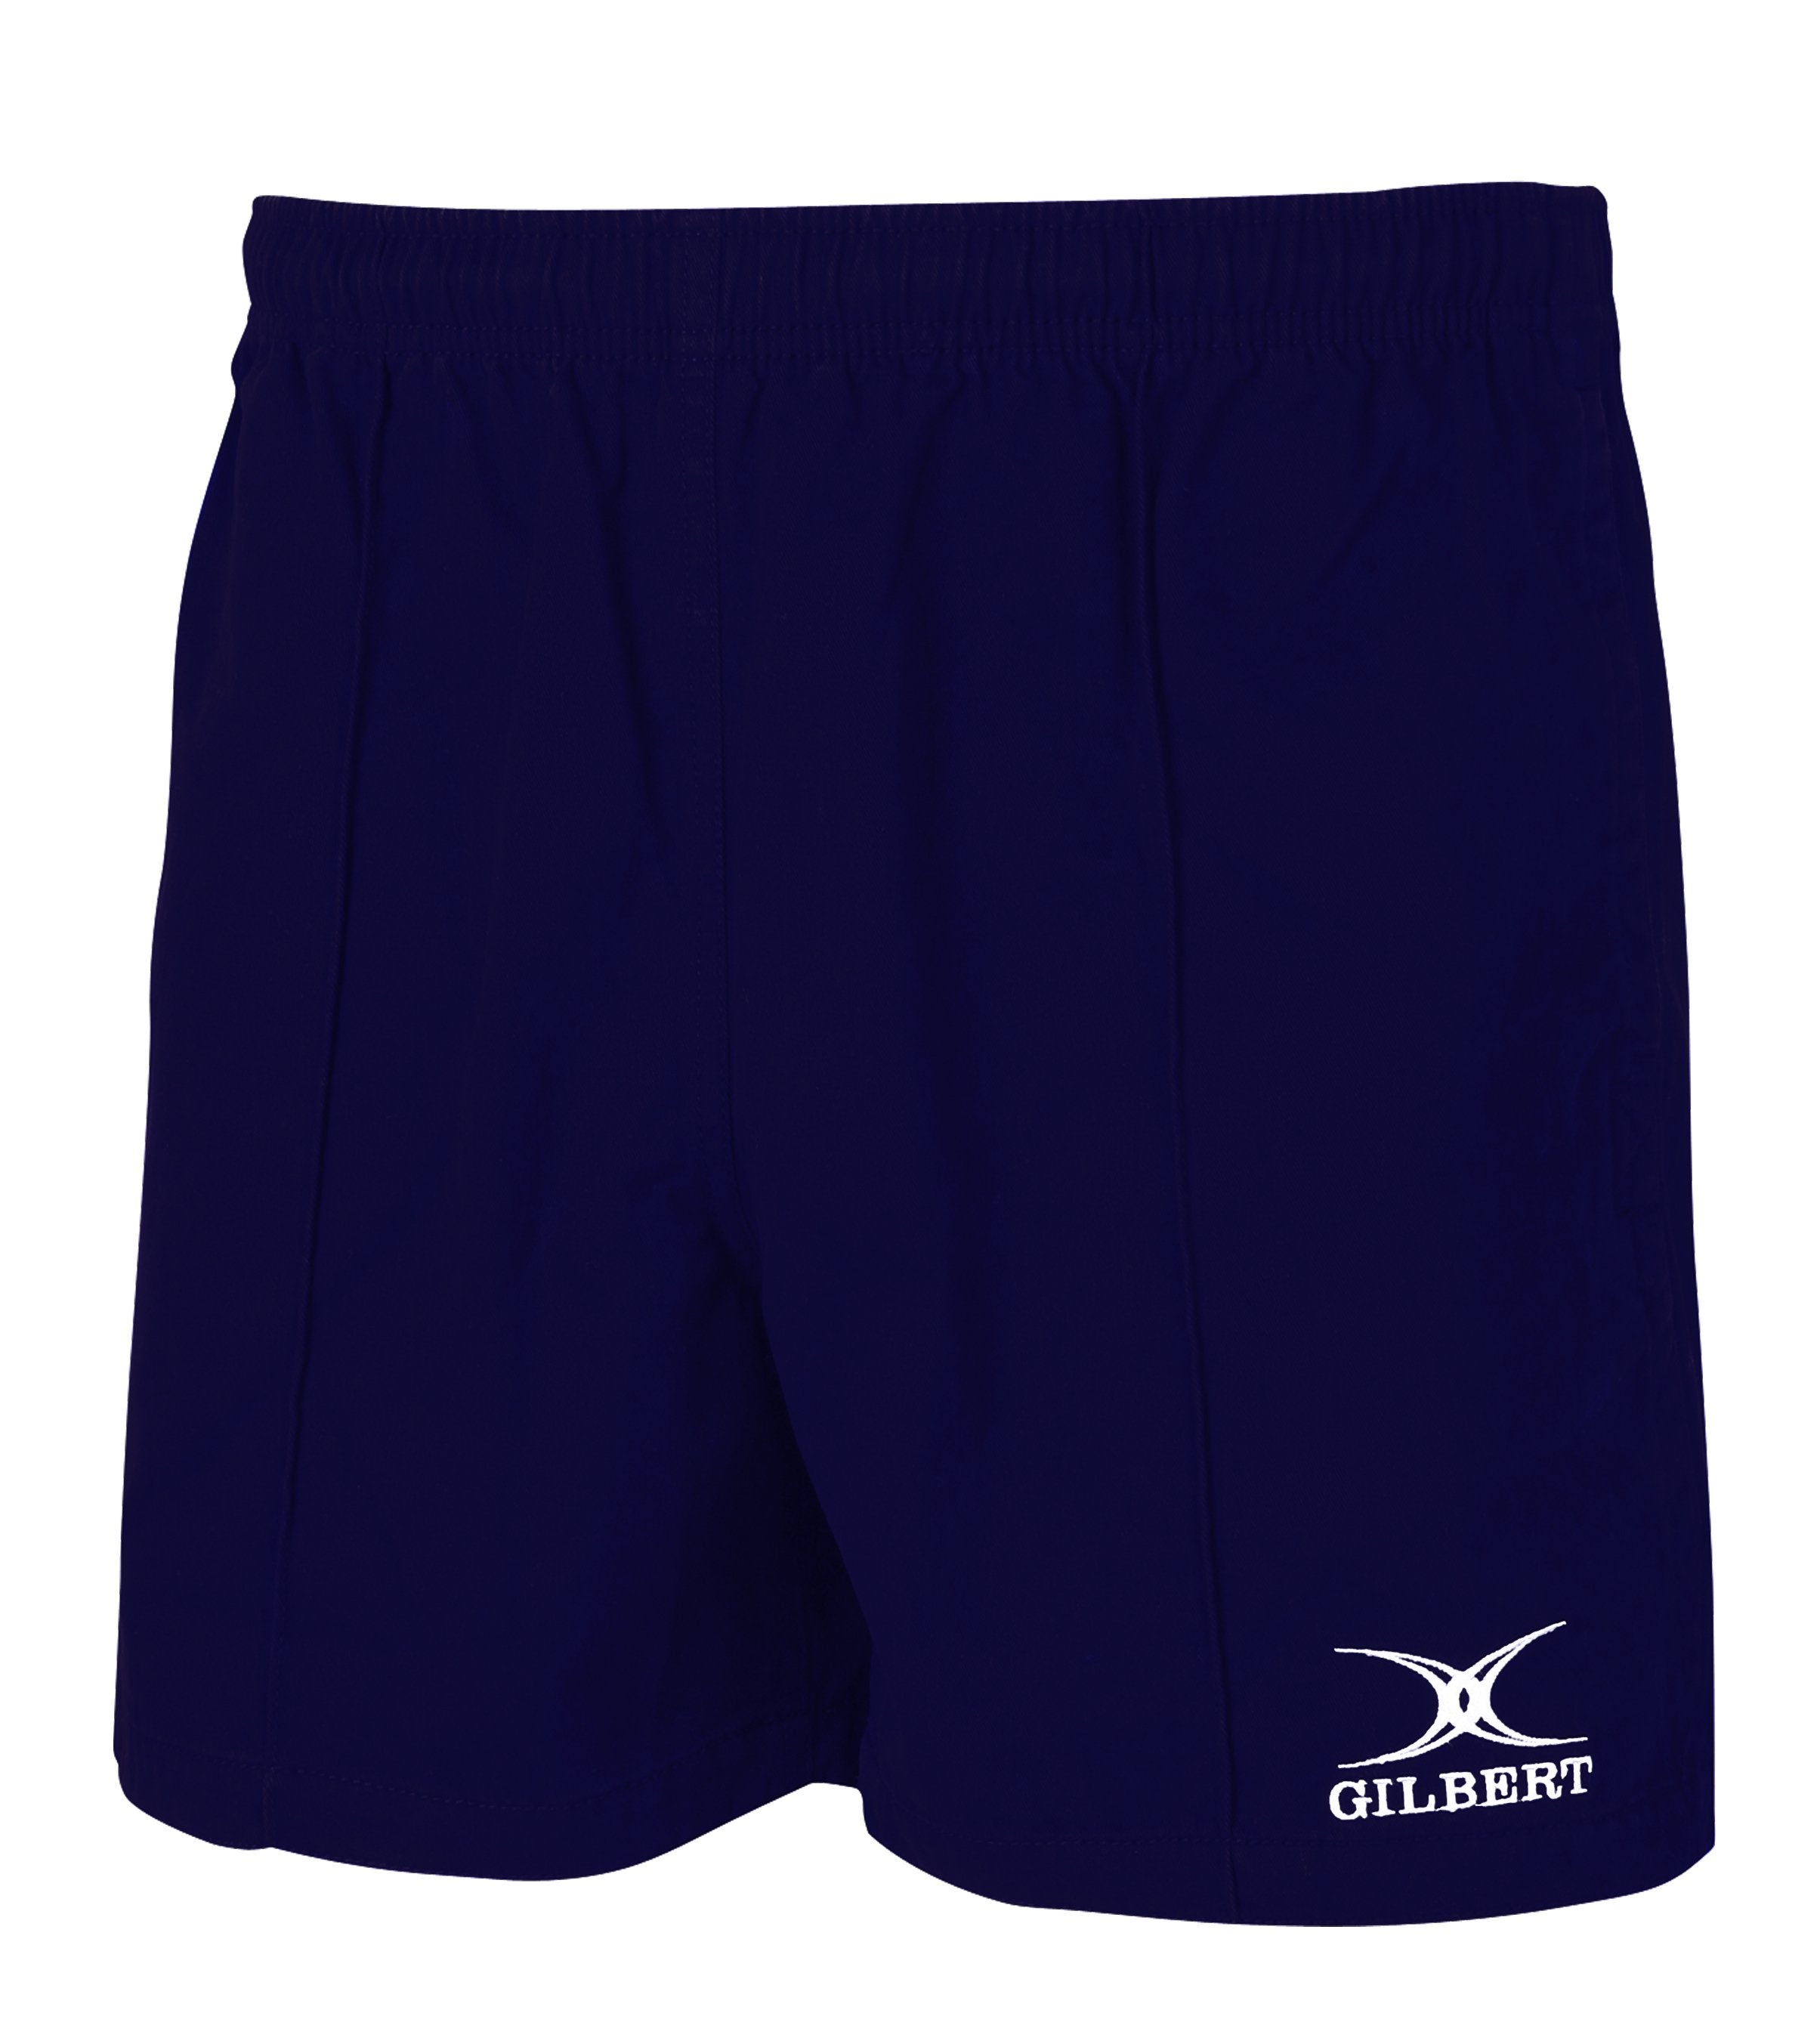 Kiwi Pro Match Shorts